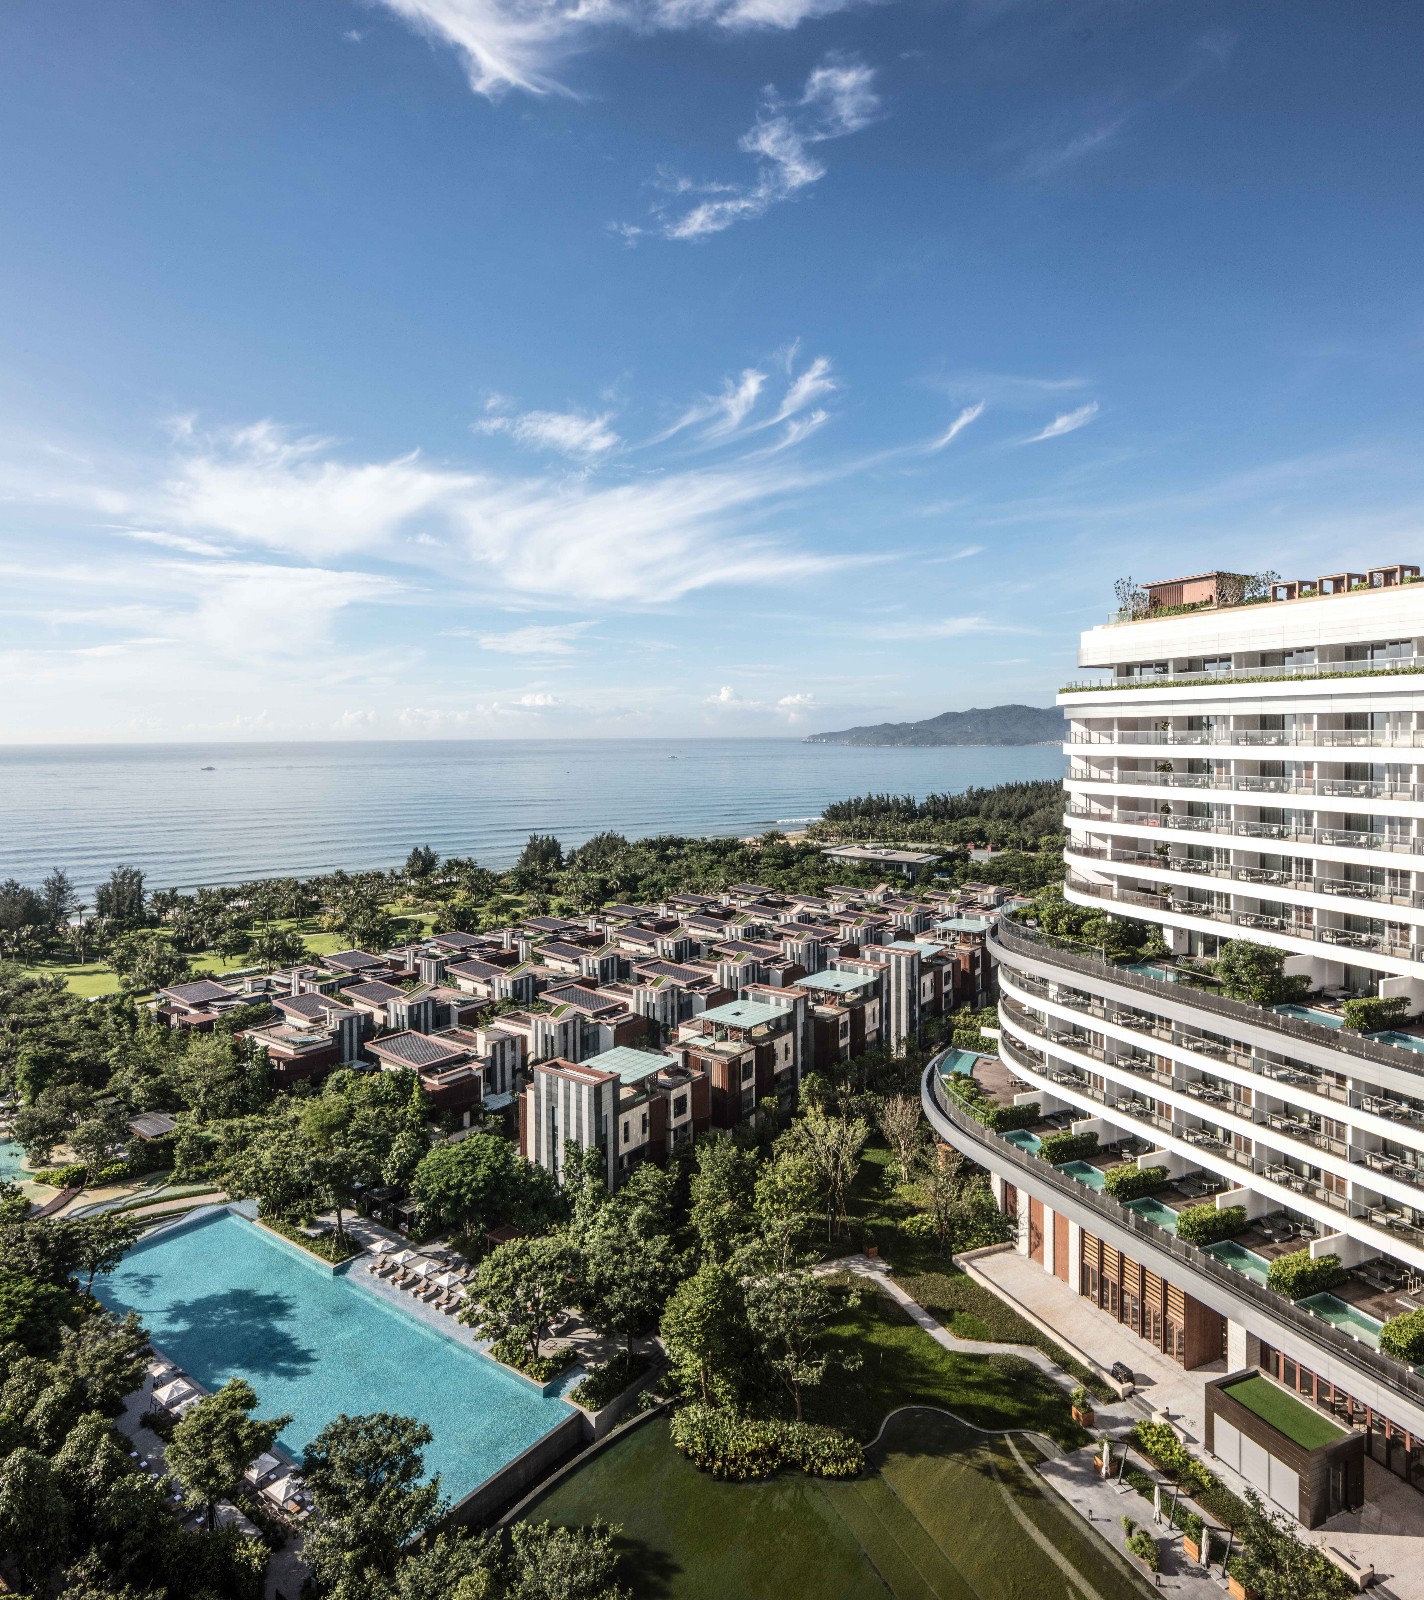 Talk to the sea: JW Marriott Hotel Sanya Dadonghai Bay, China by W&R ...